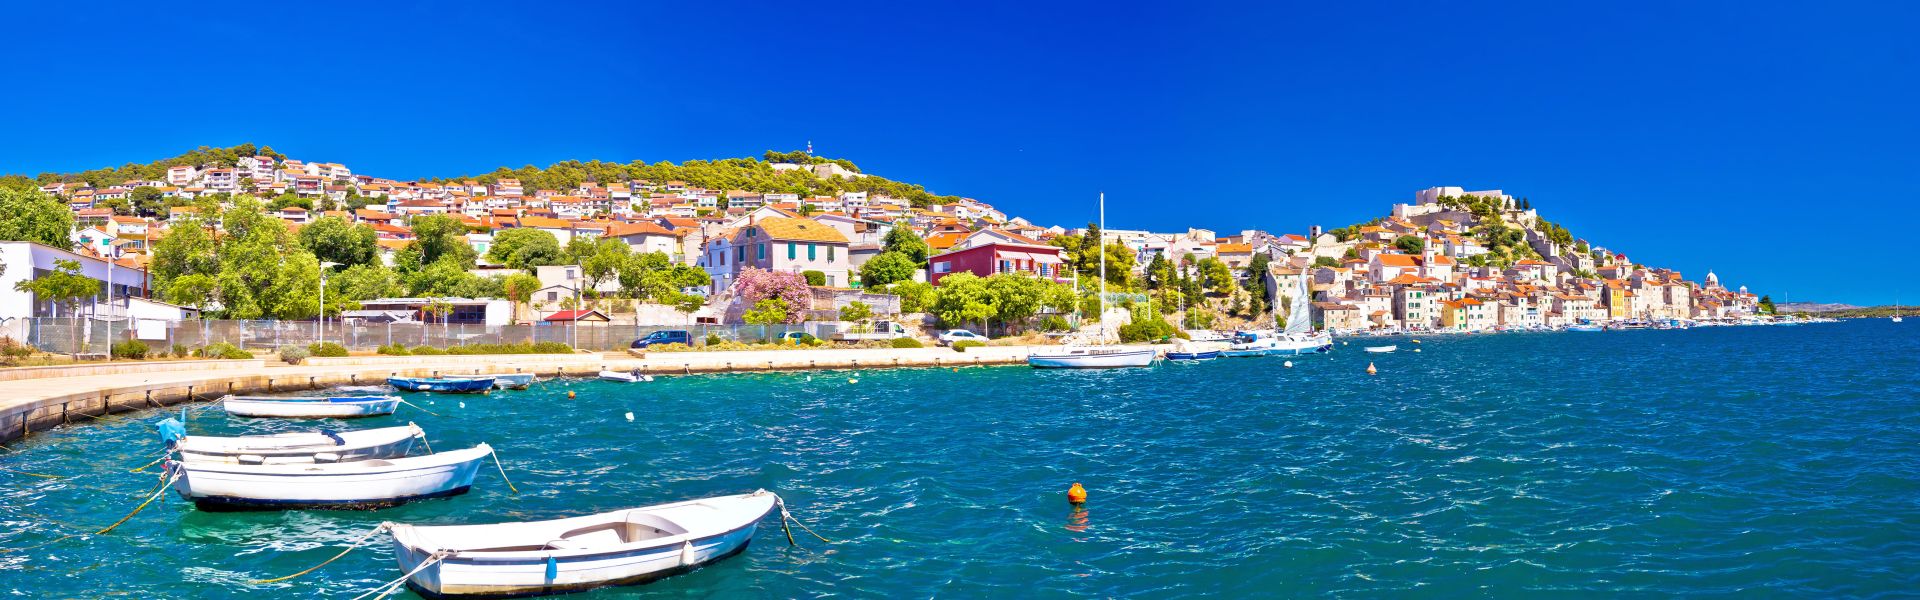 Colorful City Of Šibenik Panoramic View